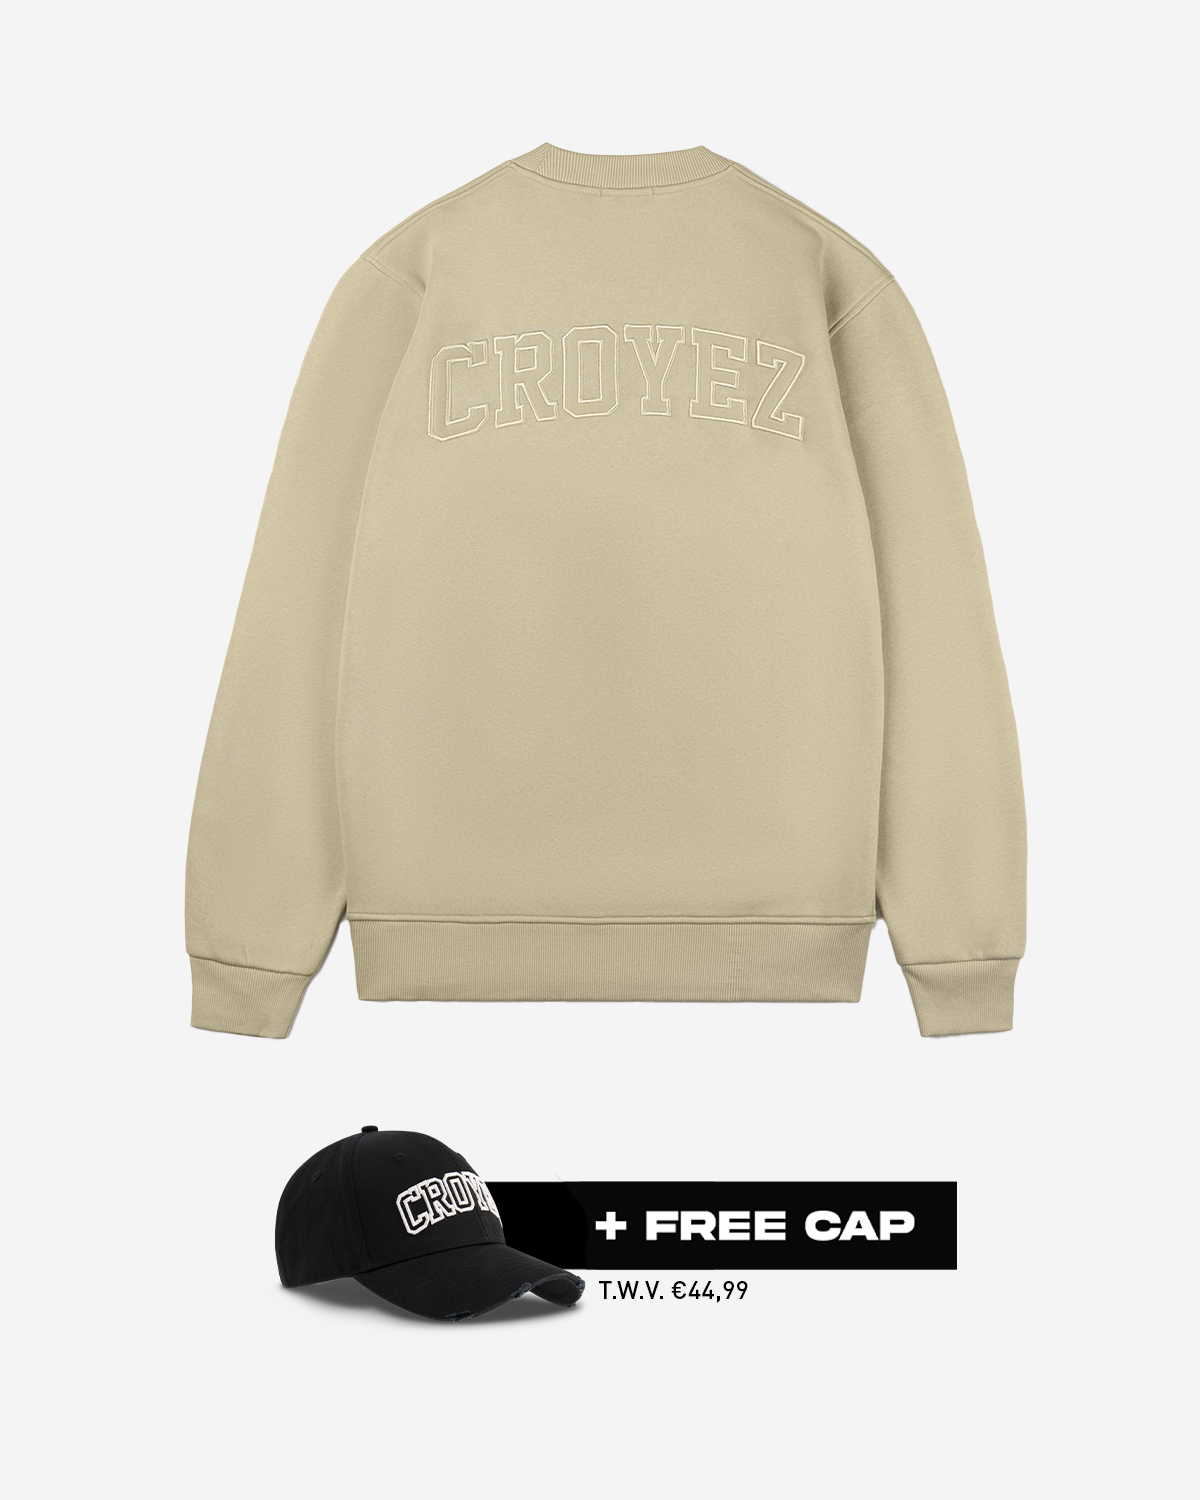 Croyez Arch Sweater Zand + Free Cap